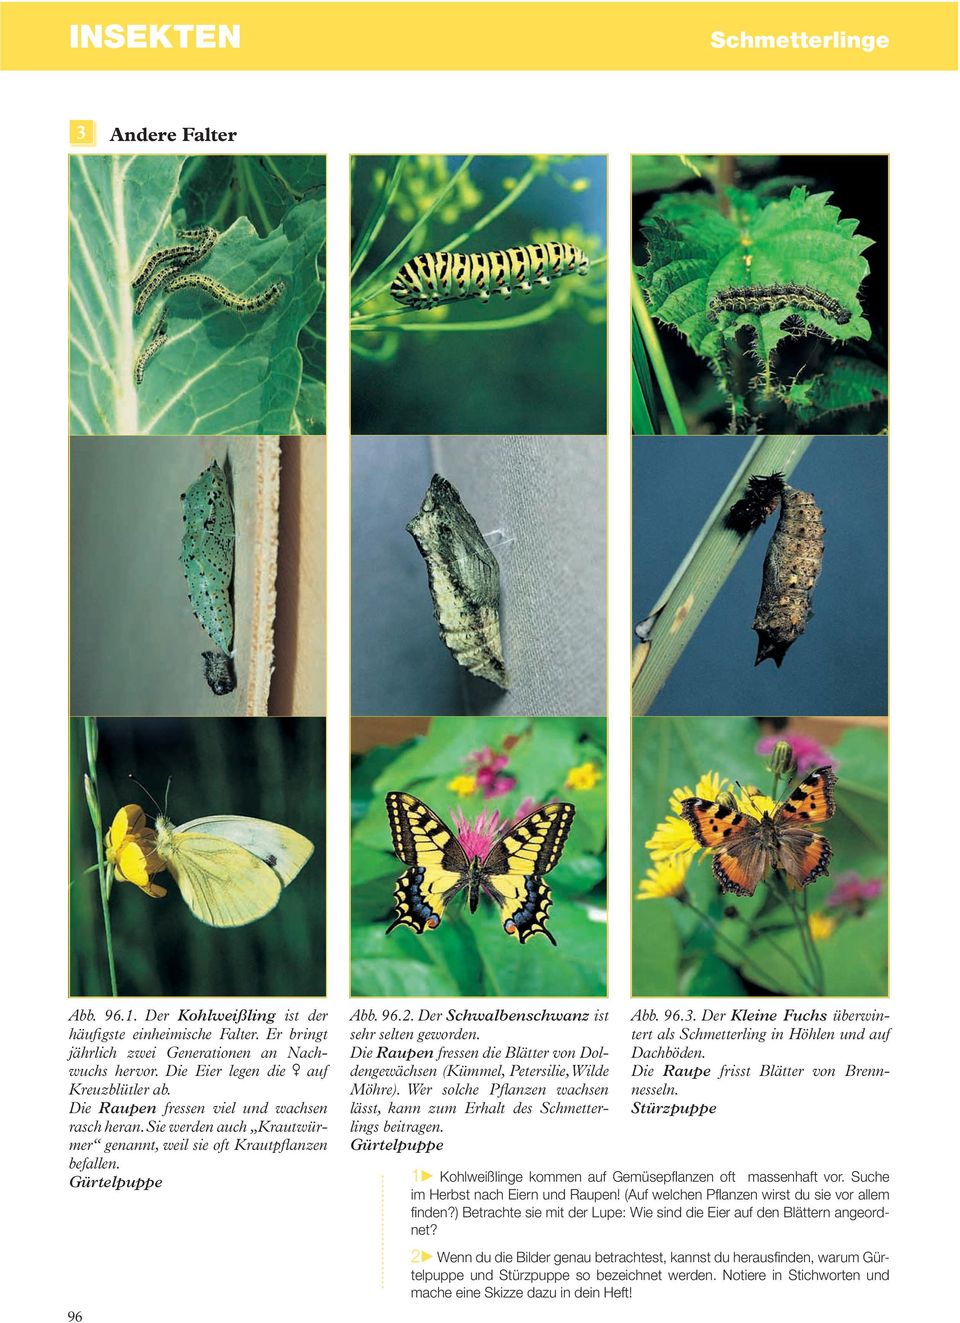 Der Schwalbenschwanz ist sehr selten geworden. Die Raupen fressen die Blätter von Doldengewächsen (Kümmel, Petersilie, Wilde Möhre).